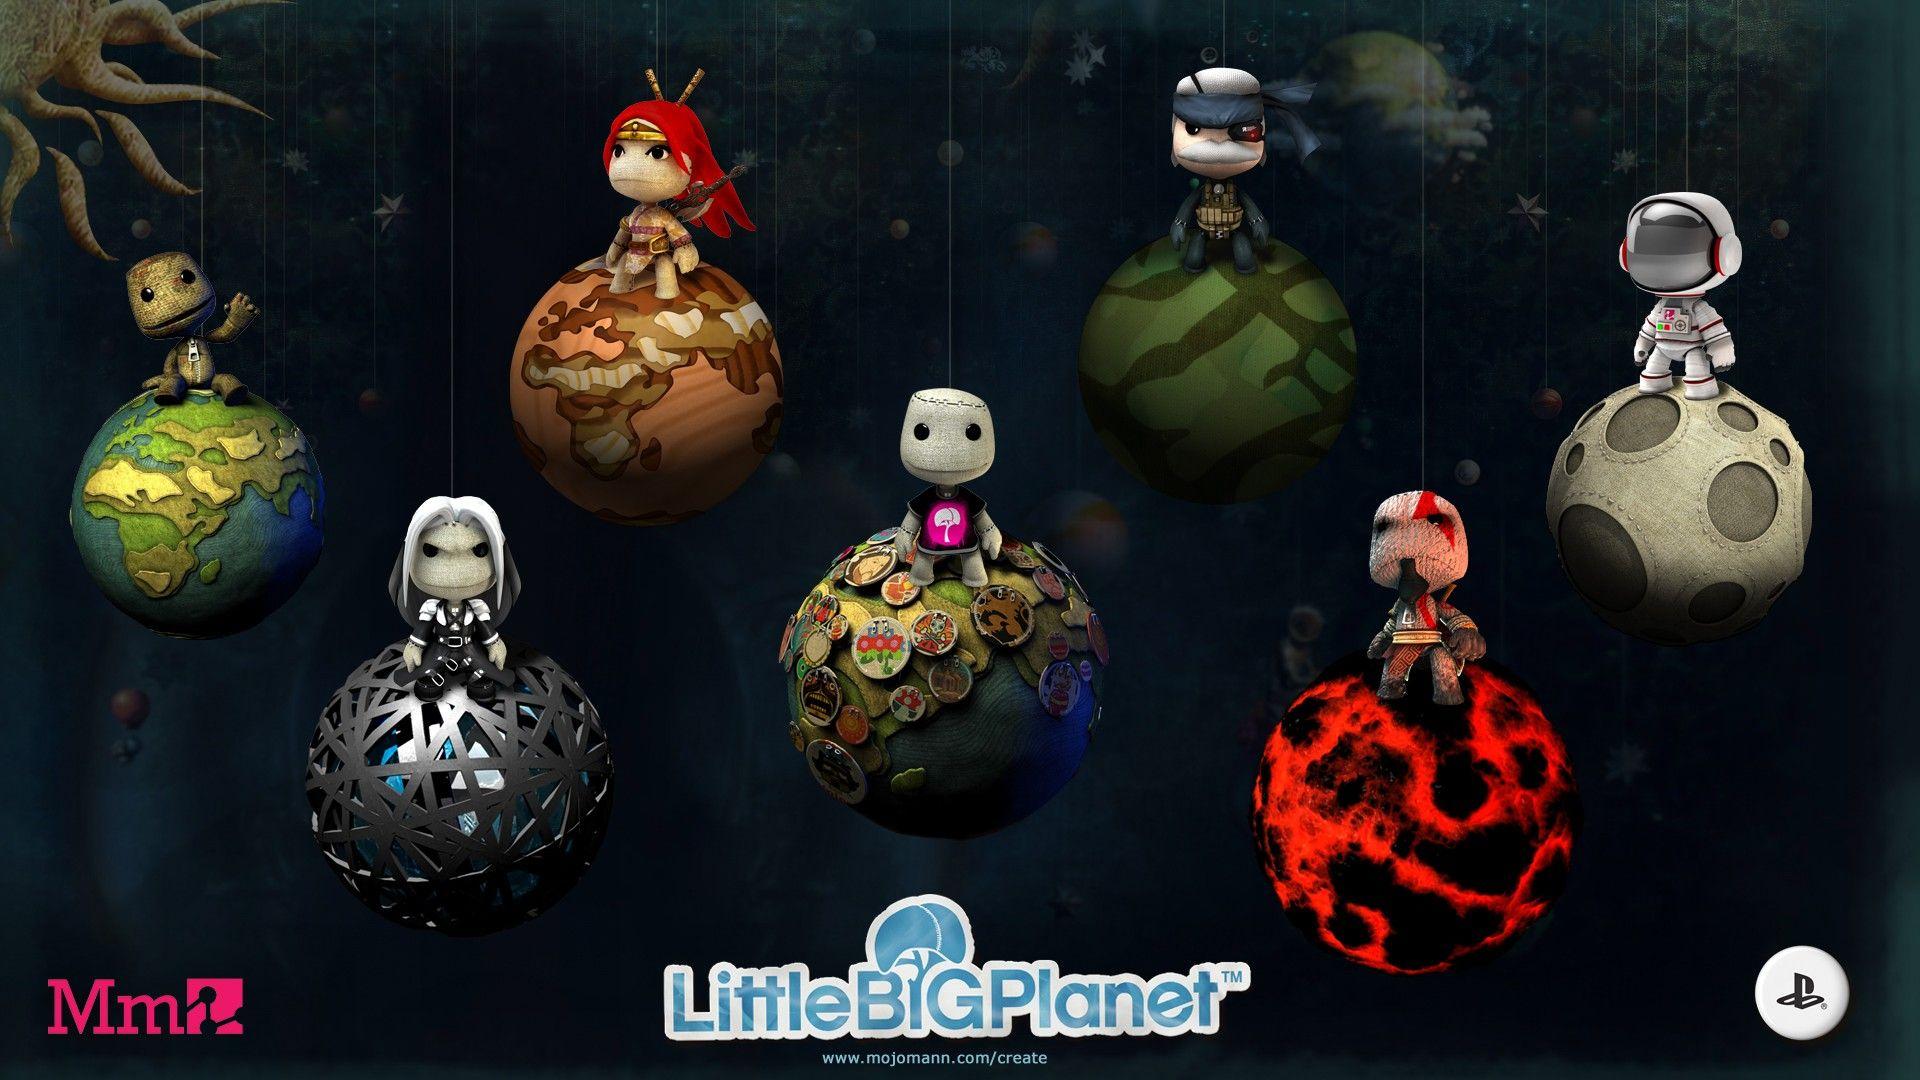 LittleBigPlanet Cartoon Wallpaper